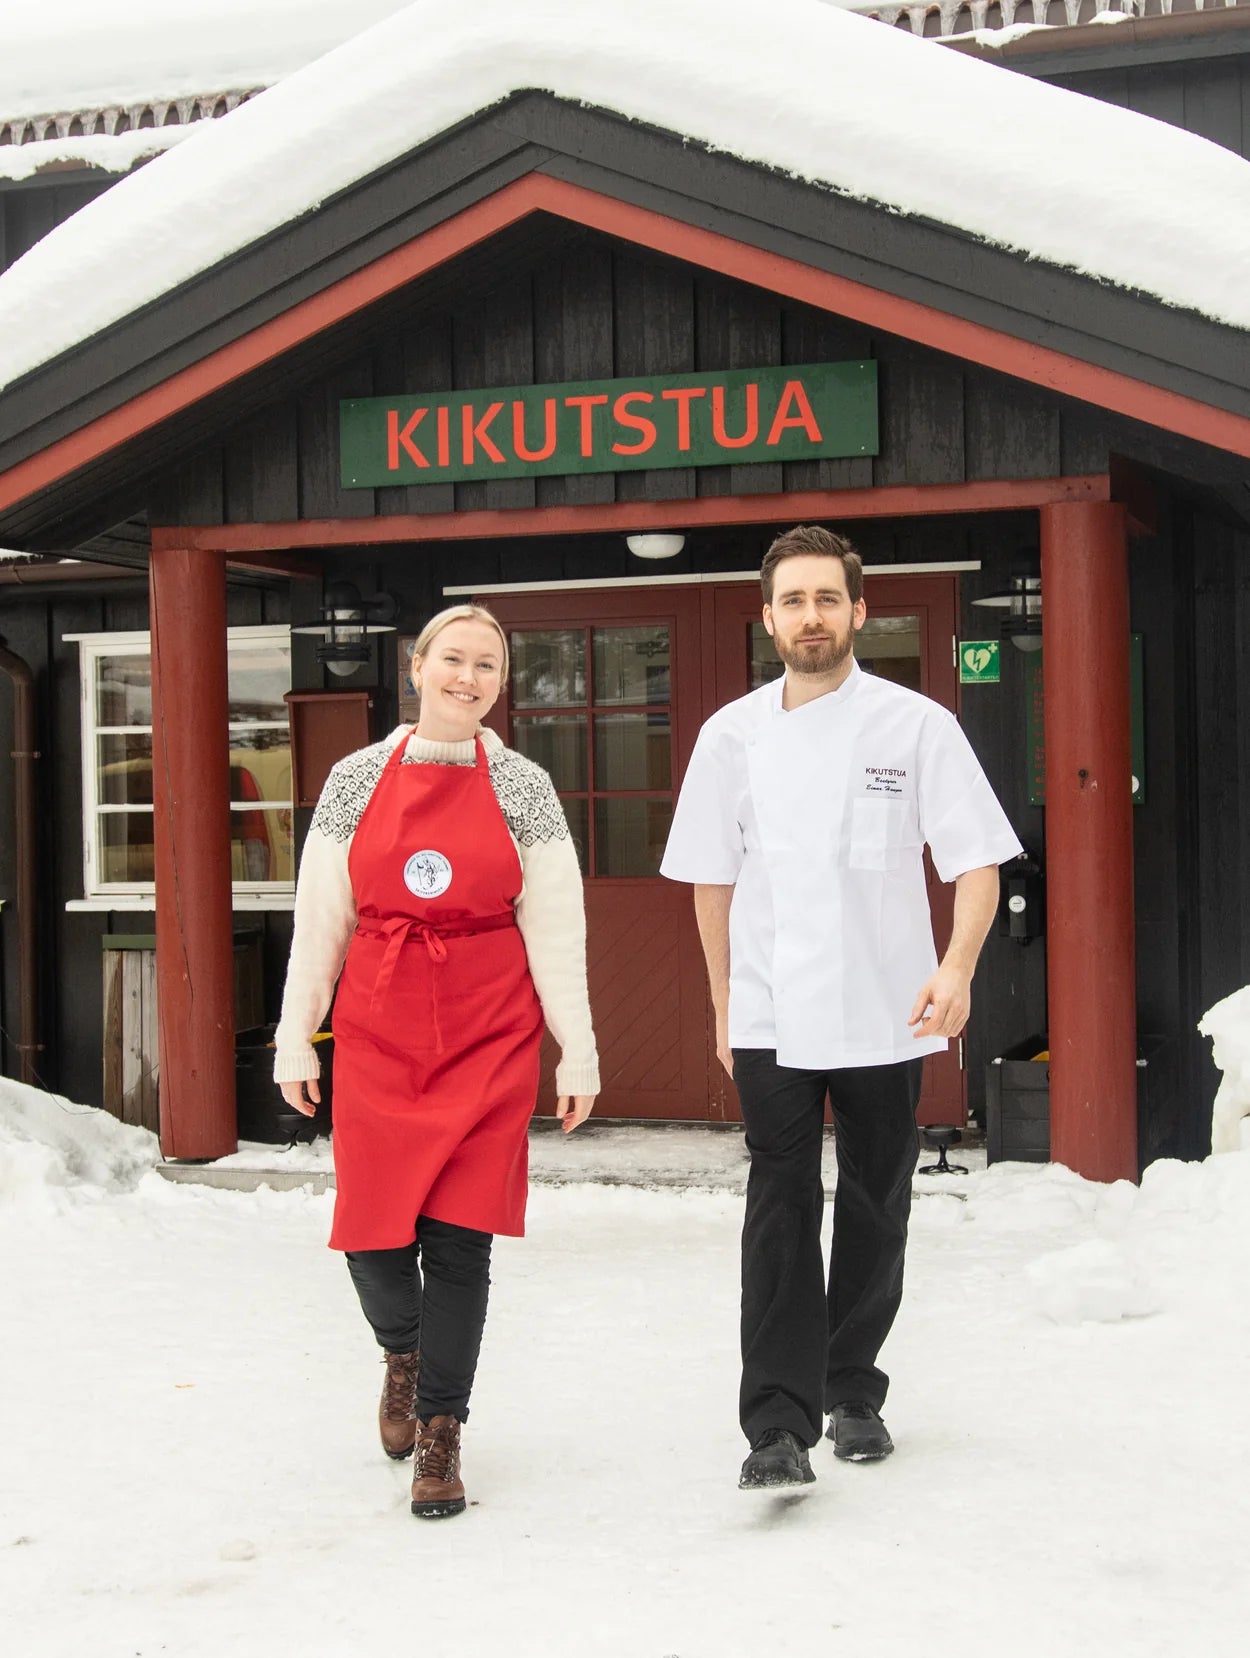 Kikutstua servering i Oslomarka